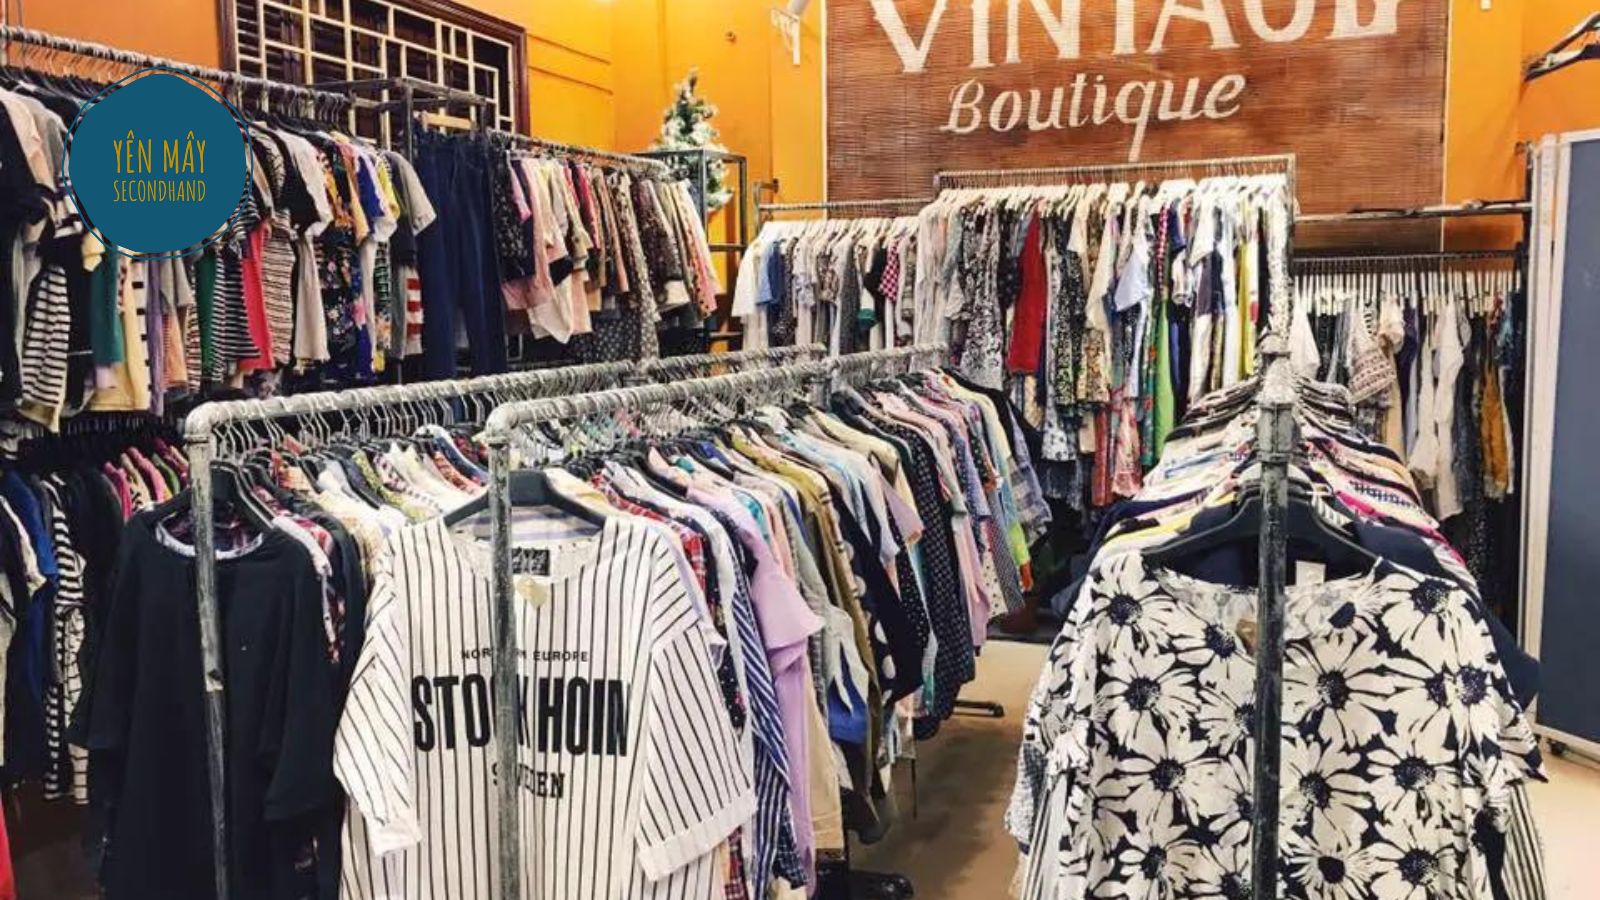 Vintage Boutique - Shop đồ secondhand Hà Nội nổi tiếng phong cách Vintage